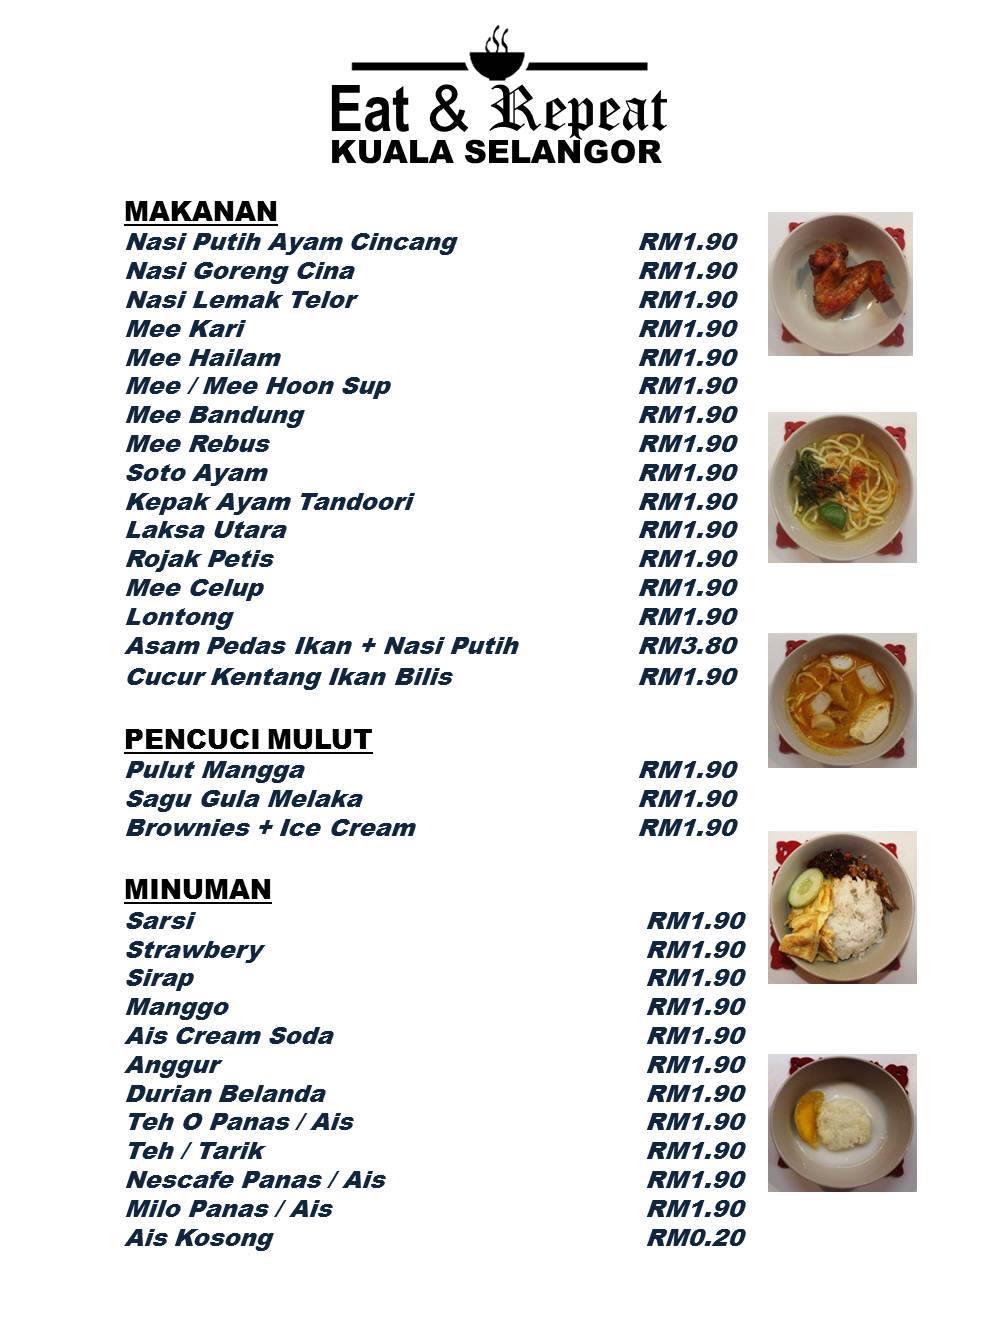 整份菜单都是RM1.90。-摘自Eat&Pepeat Cafe粉丝专页-